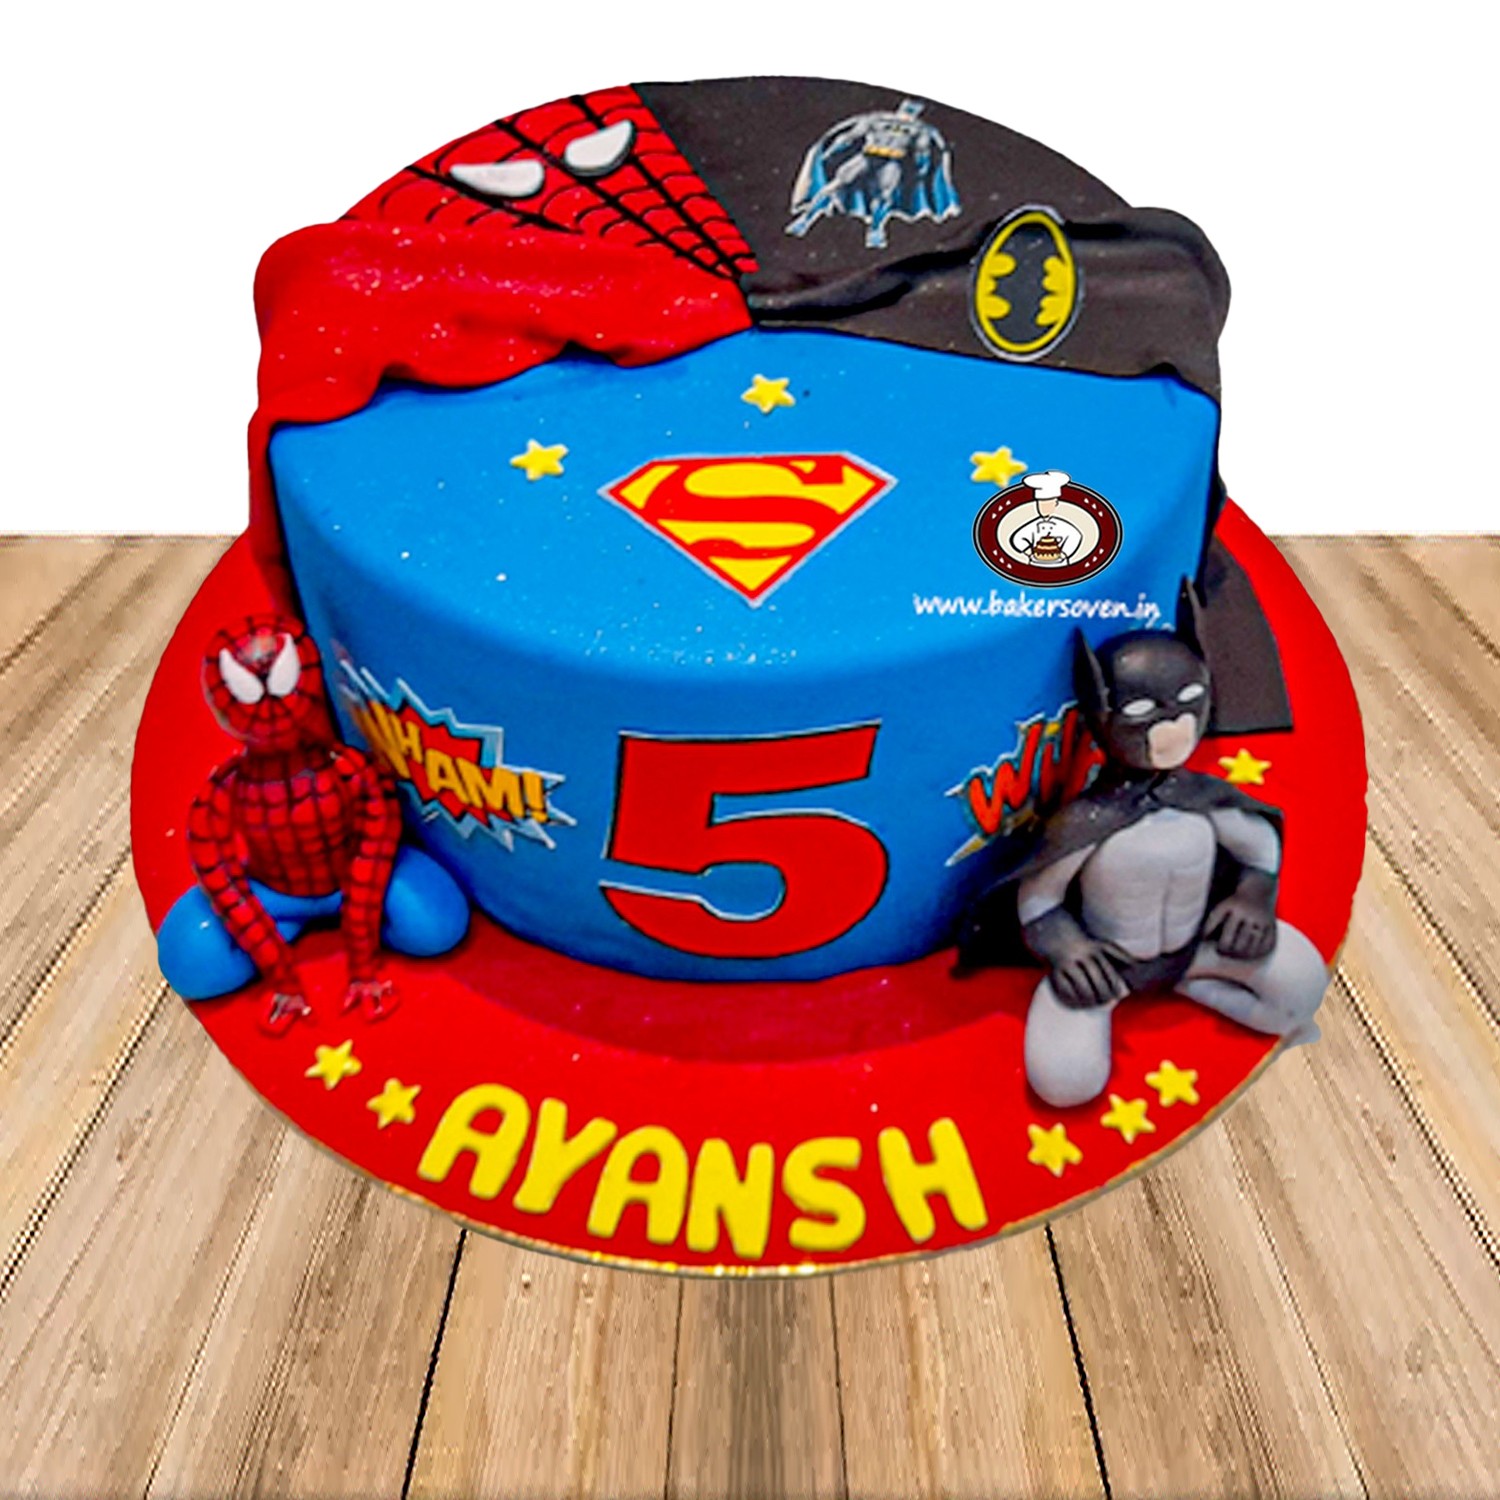 Avenger Theme Cake Designs & Images